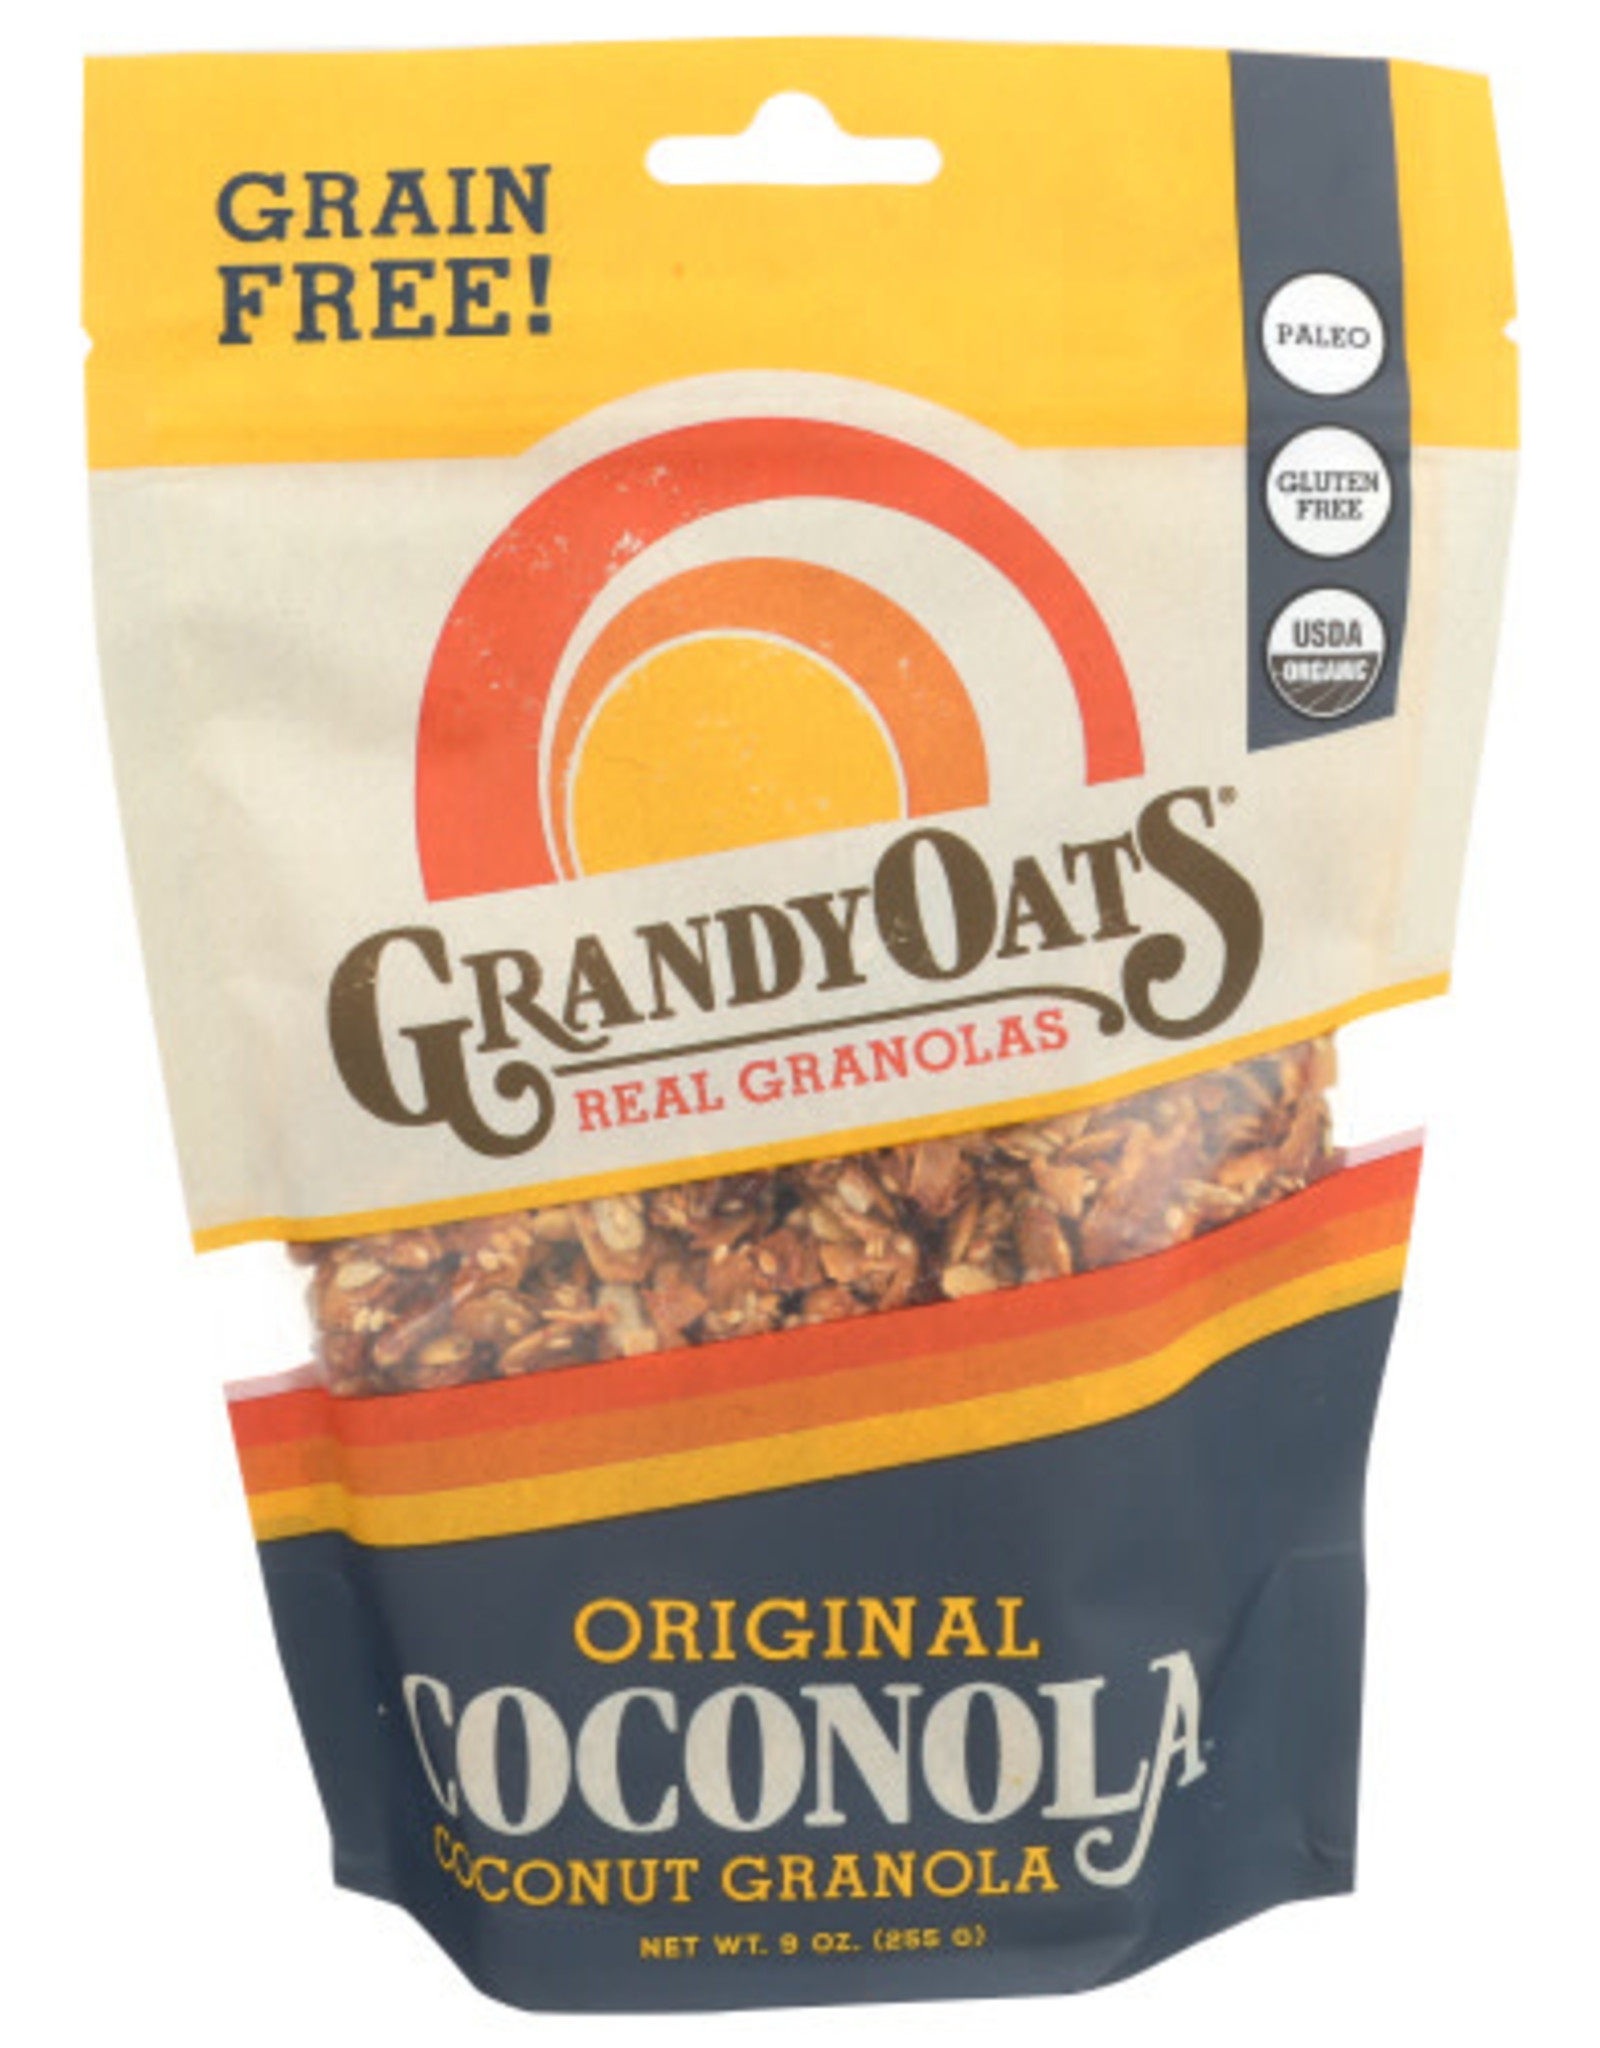 GRANDYOATS® GRANDY OATS COCONUT GRANOLA ORIGINAL, 9 OZ. BAG